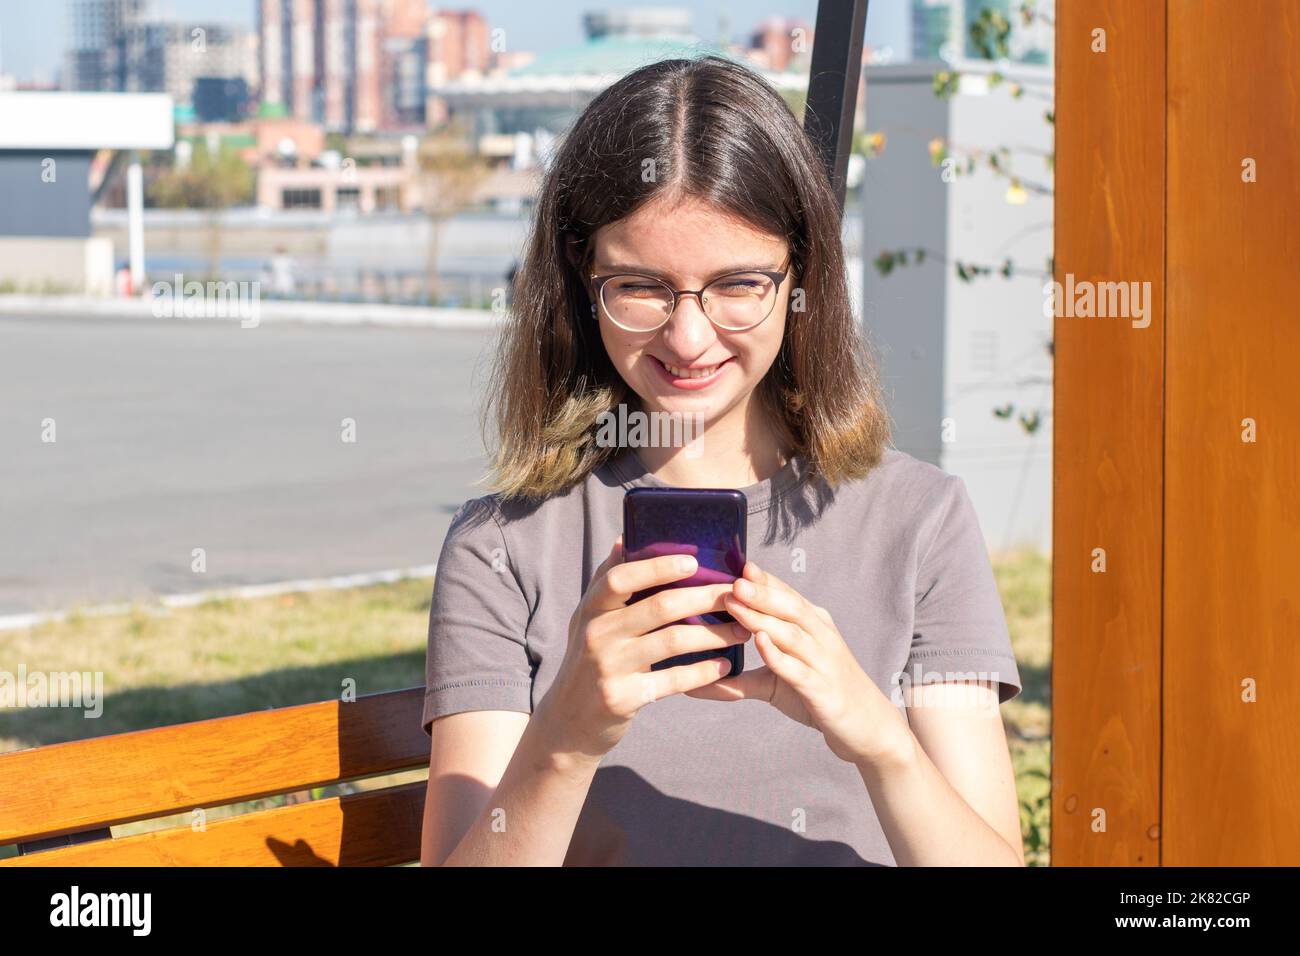 Eine spanische Studentin mit Brille, die SMS auf ein Mobiltelefon schreibt, im Internet nach etwas sucht und online mit Freunden kommuniziert, die draußen sitzen Stockfoto